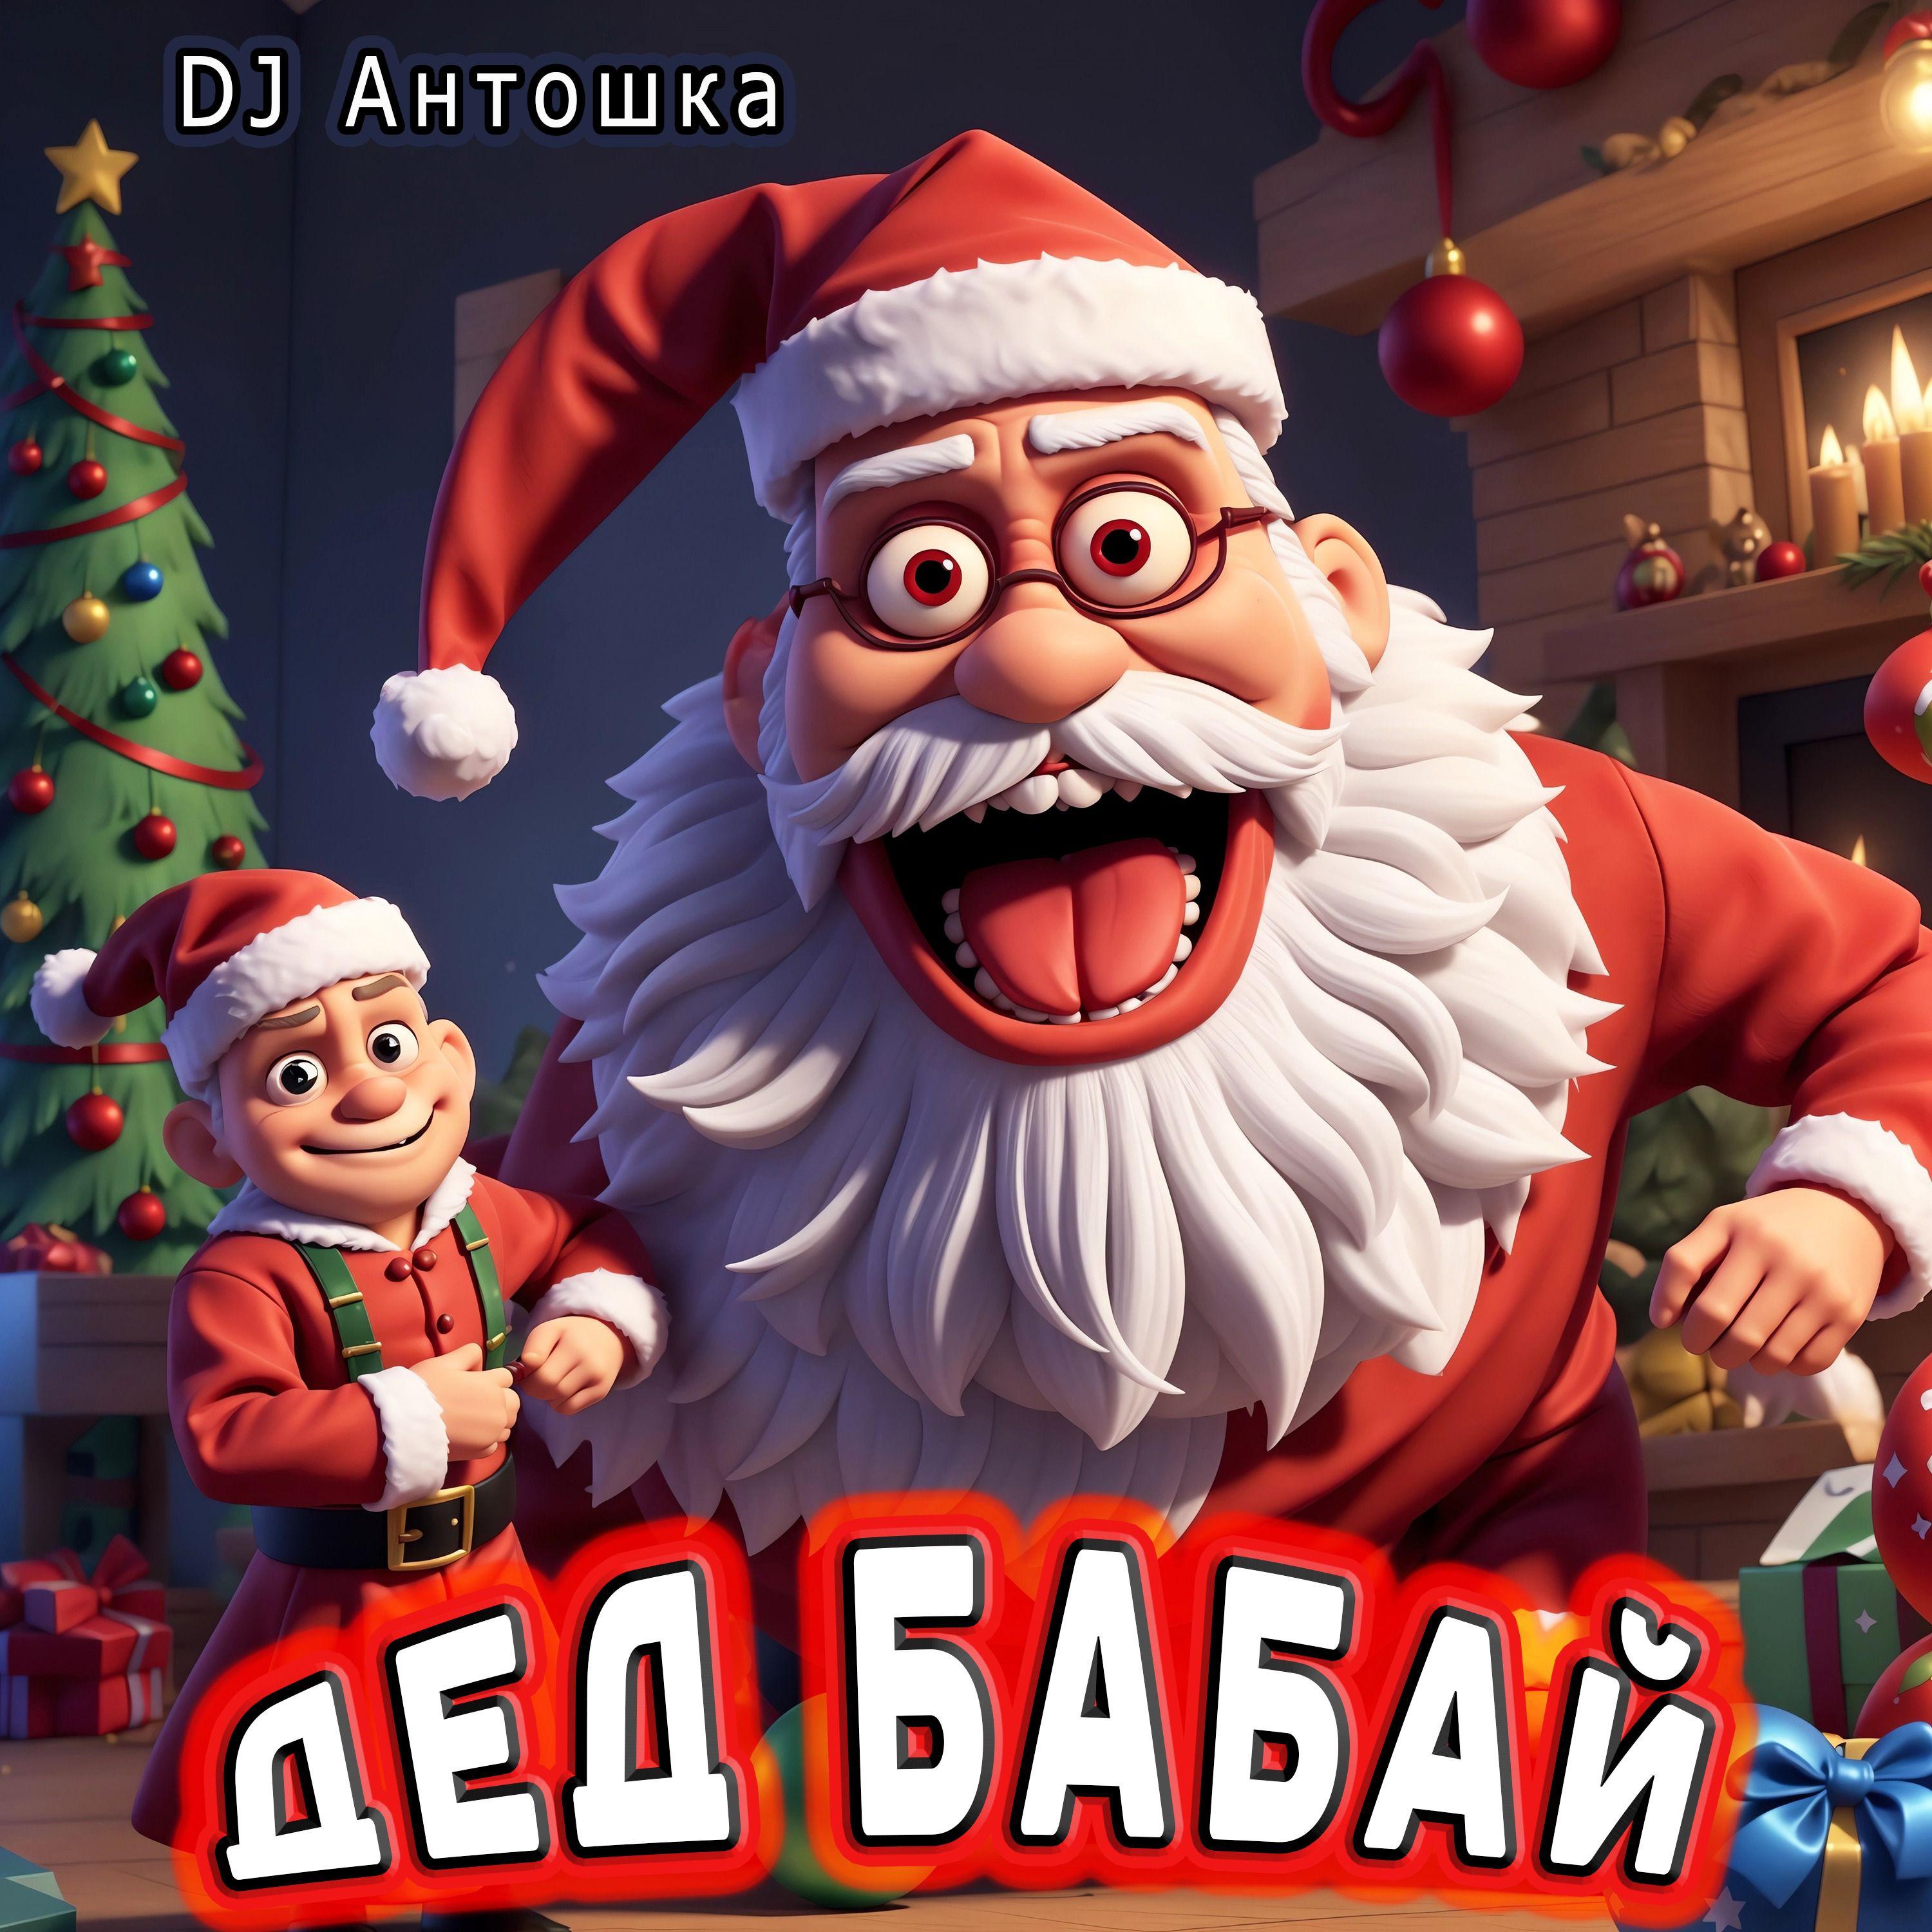 Постер альбома ДЕД БАБАЙ